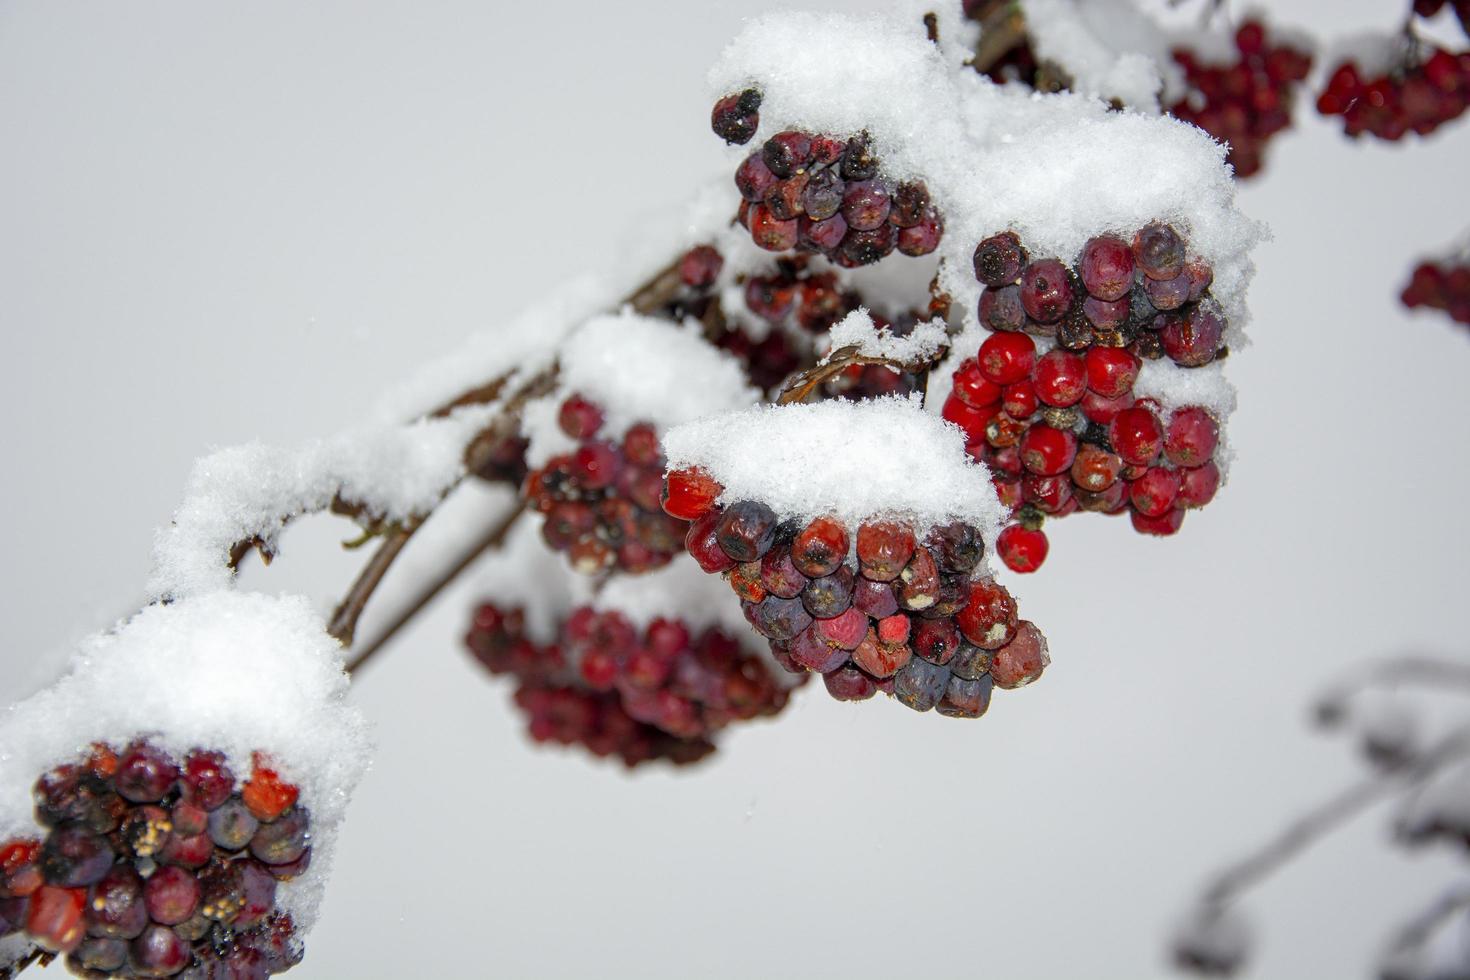 Rowan in the snow. Rowan berries in December. photo